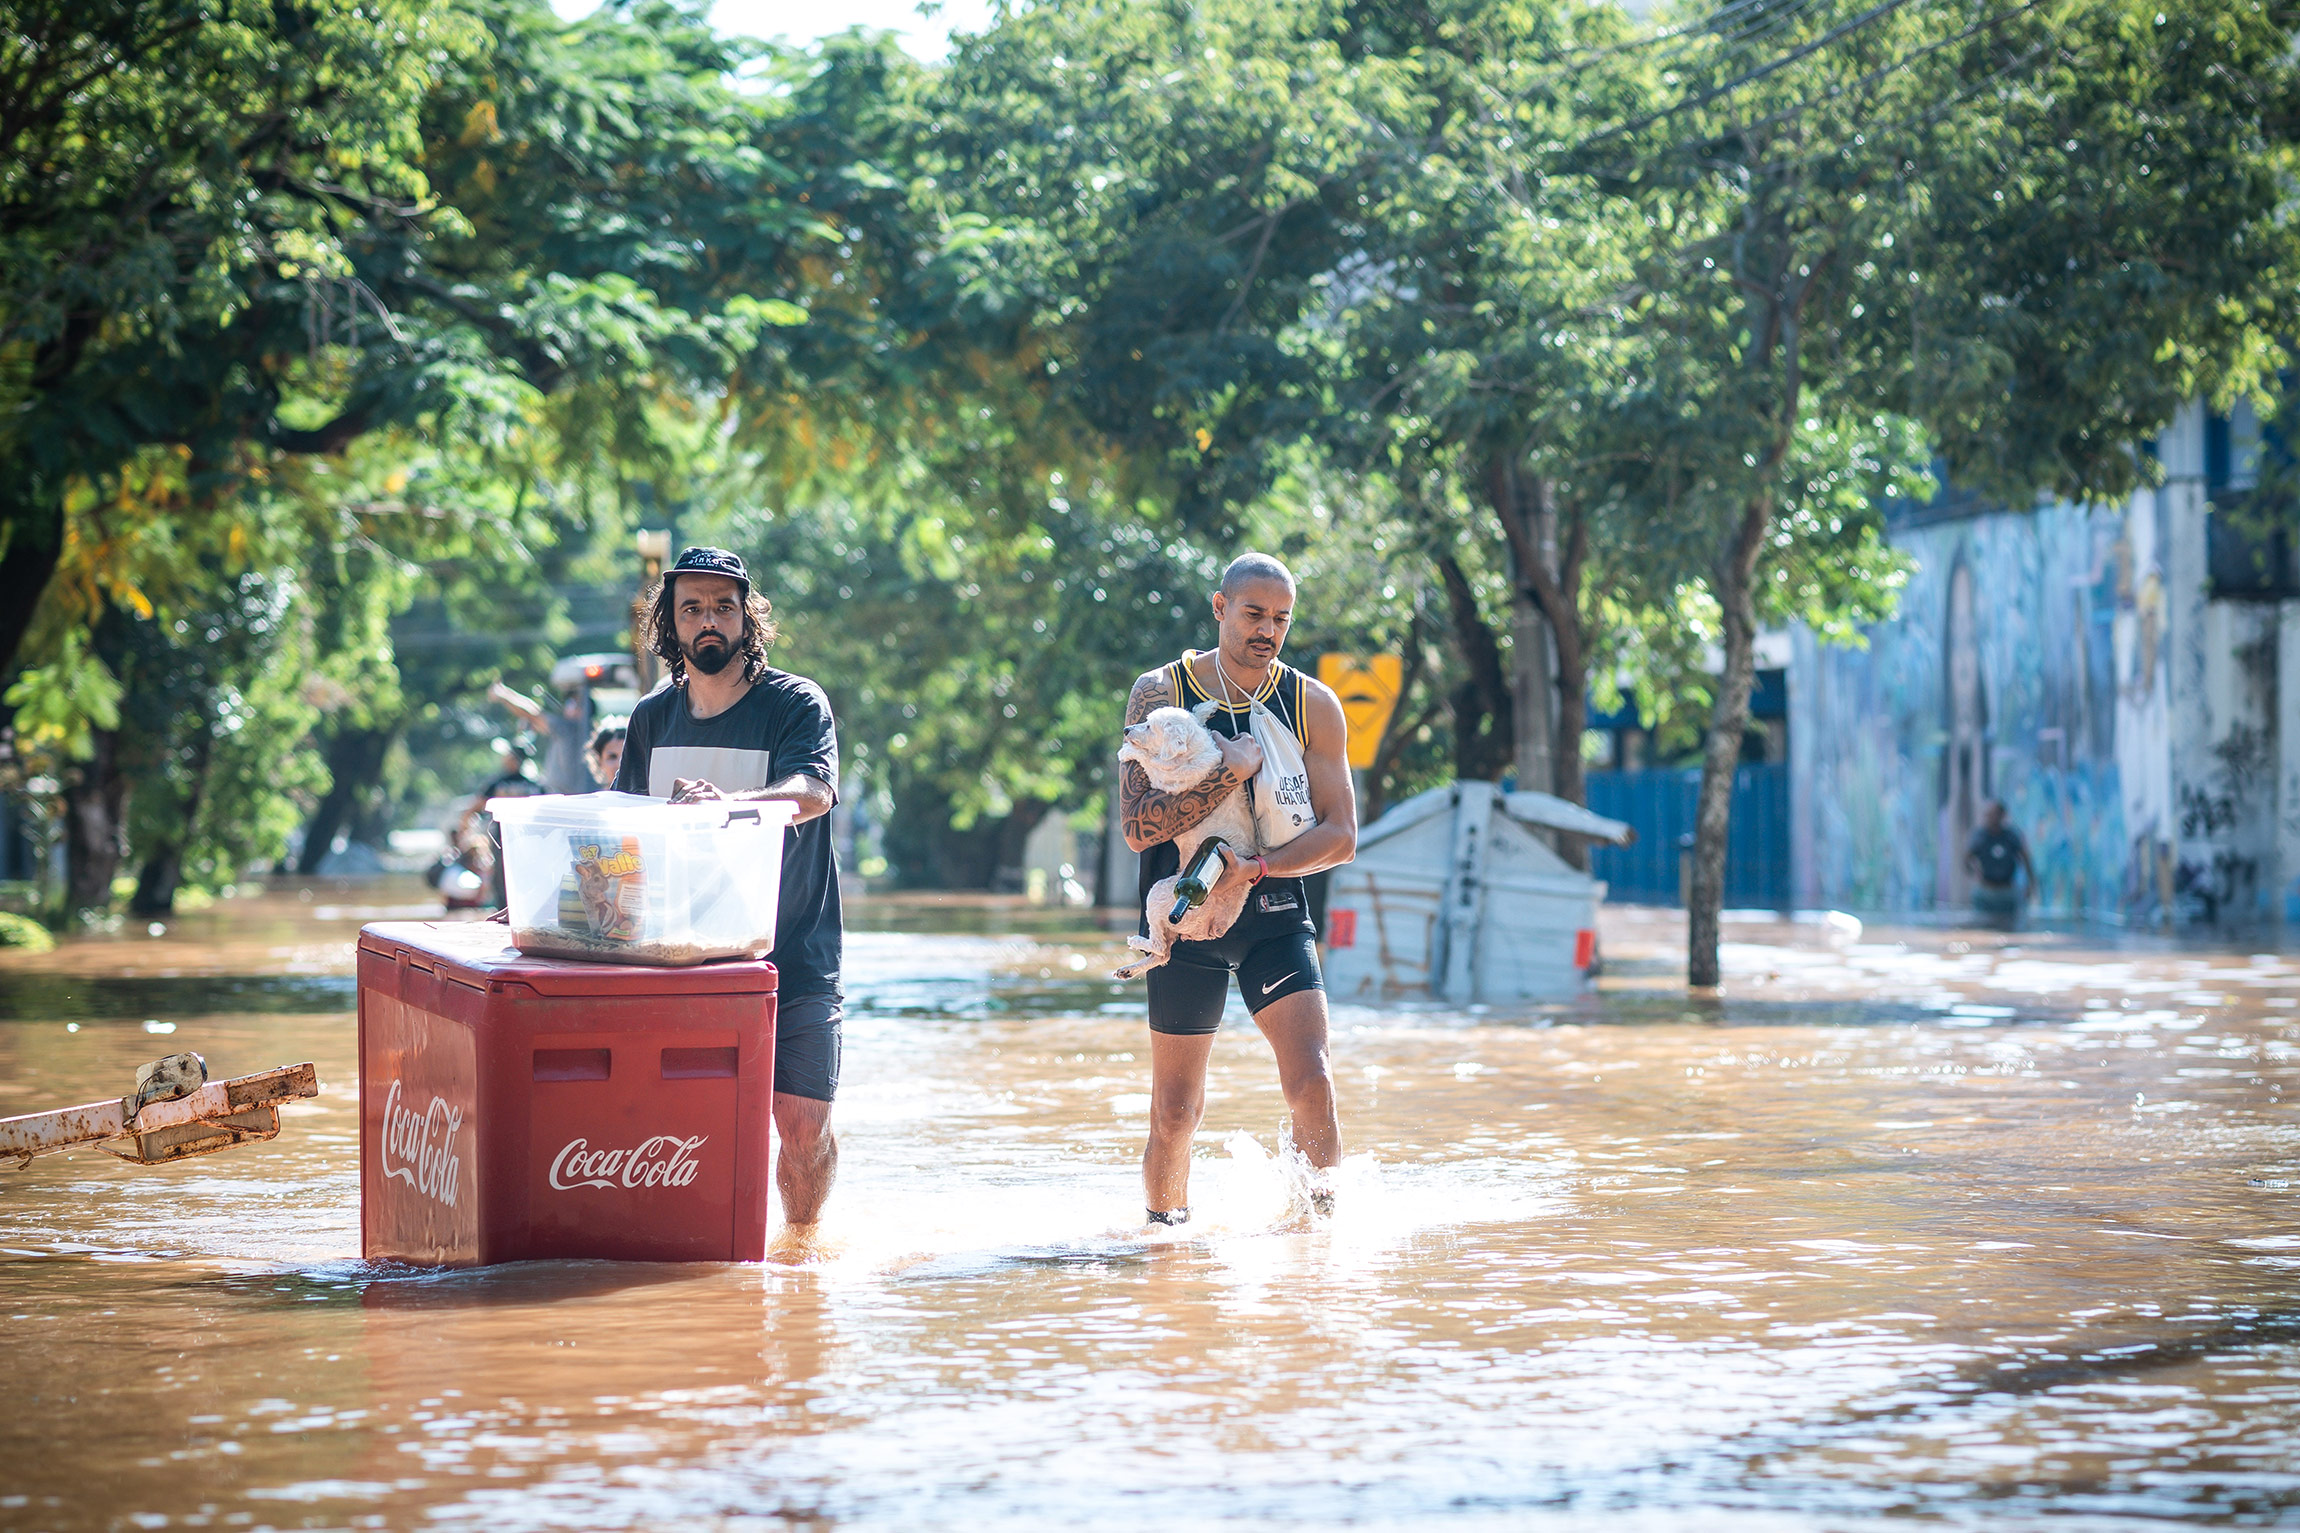 В нескольких&nbsp;районах&nbsp;штата Риу-Гранди-ду-Сул возникли перебои с продуктами, пишет Reuters, некоторые люди голодают по несколько дней.